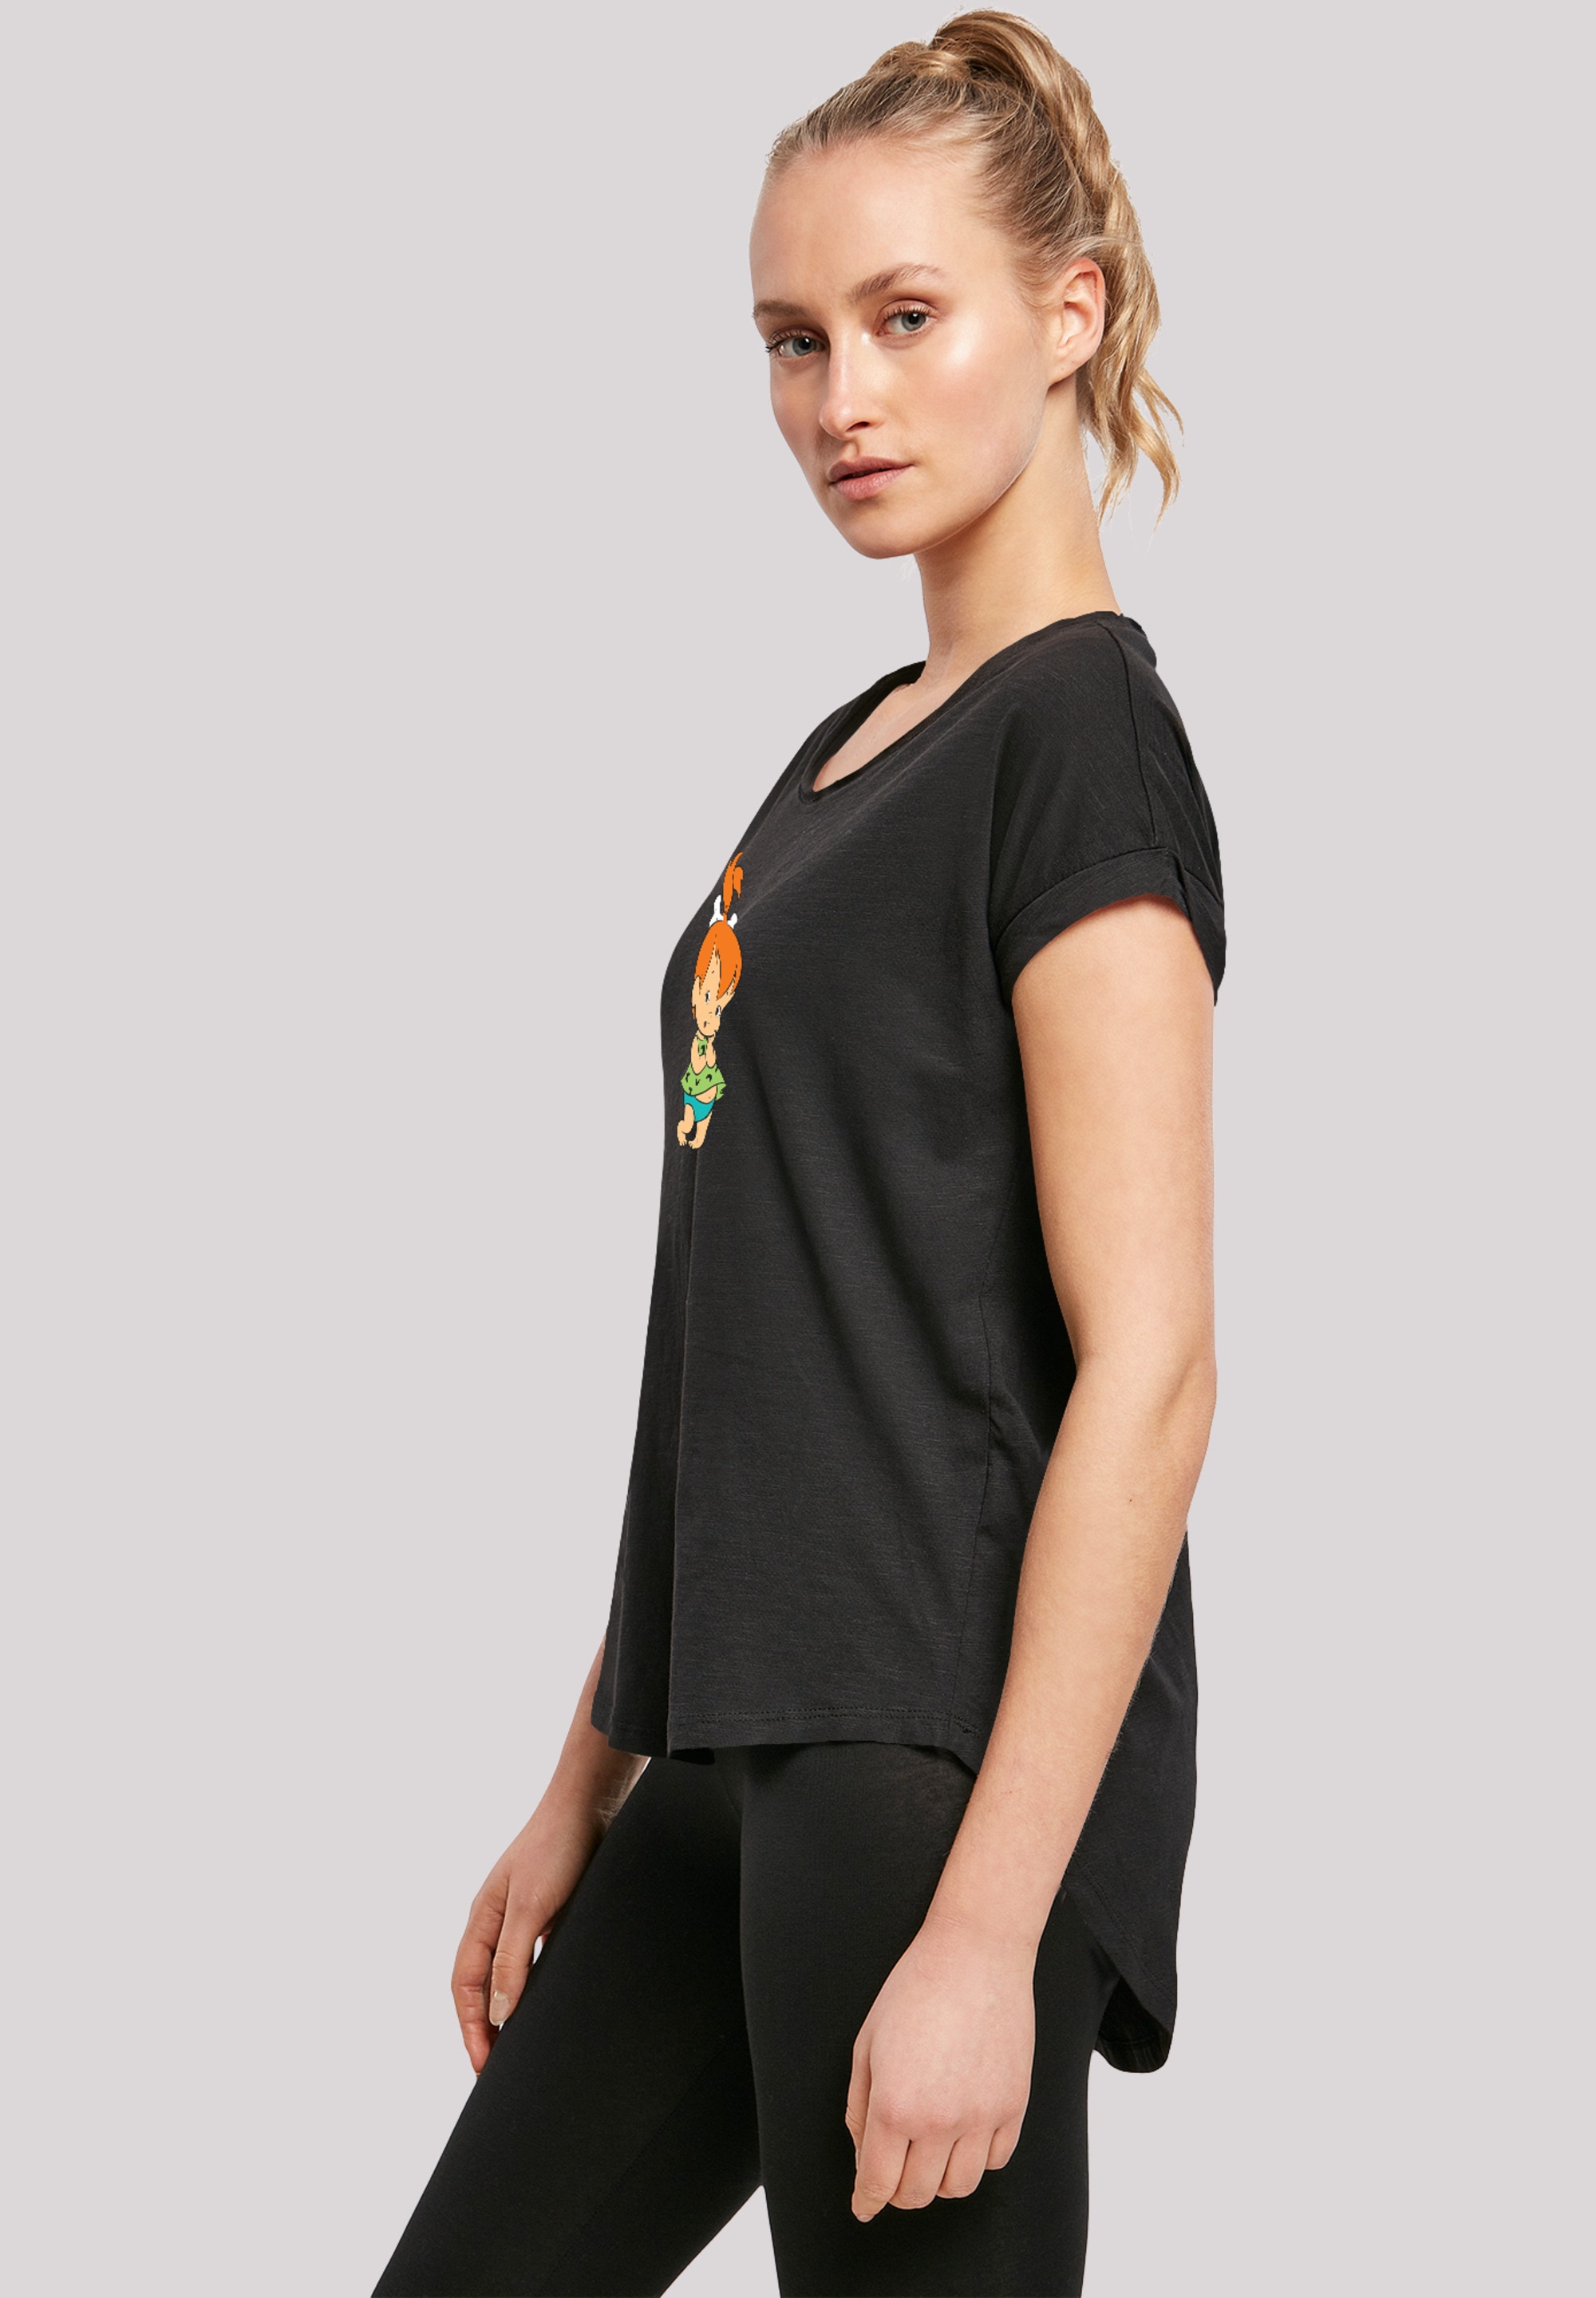 Damen,Premium F4NT4STIC T-Shirt »Pebbles Bedruckt Feuerstein«, Merch,Lang,Longshirt, shoppen